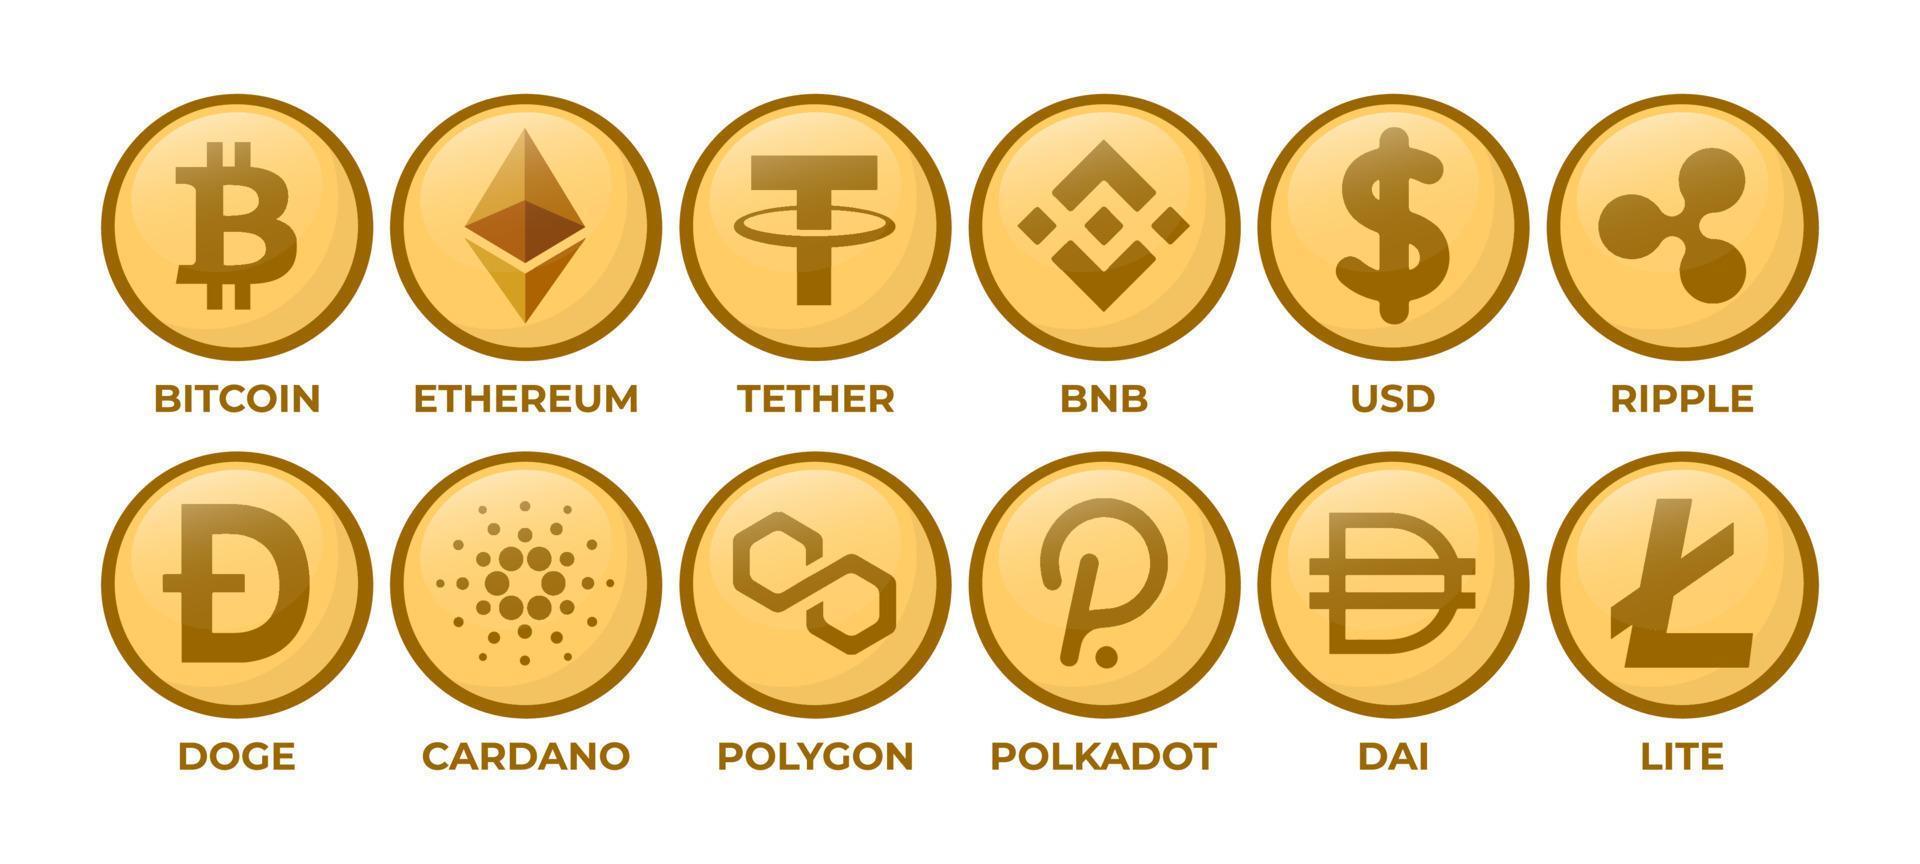 satz von kryptowährungslogomünzen bitcoin, ethereum, tether, bnb, usd, welligkeit, dogen, cardano, polygon, polkadot, dai, lite vektor